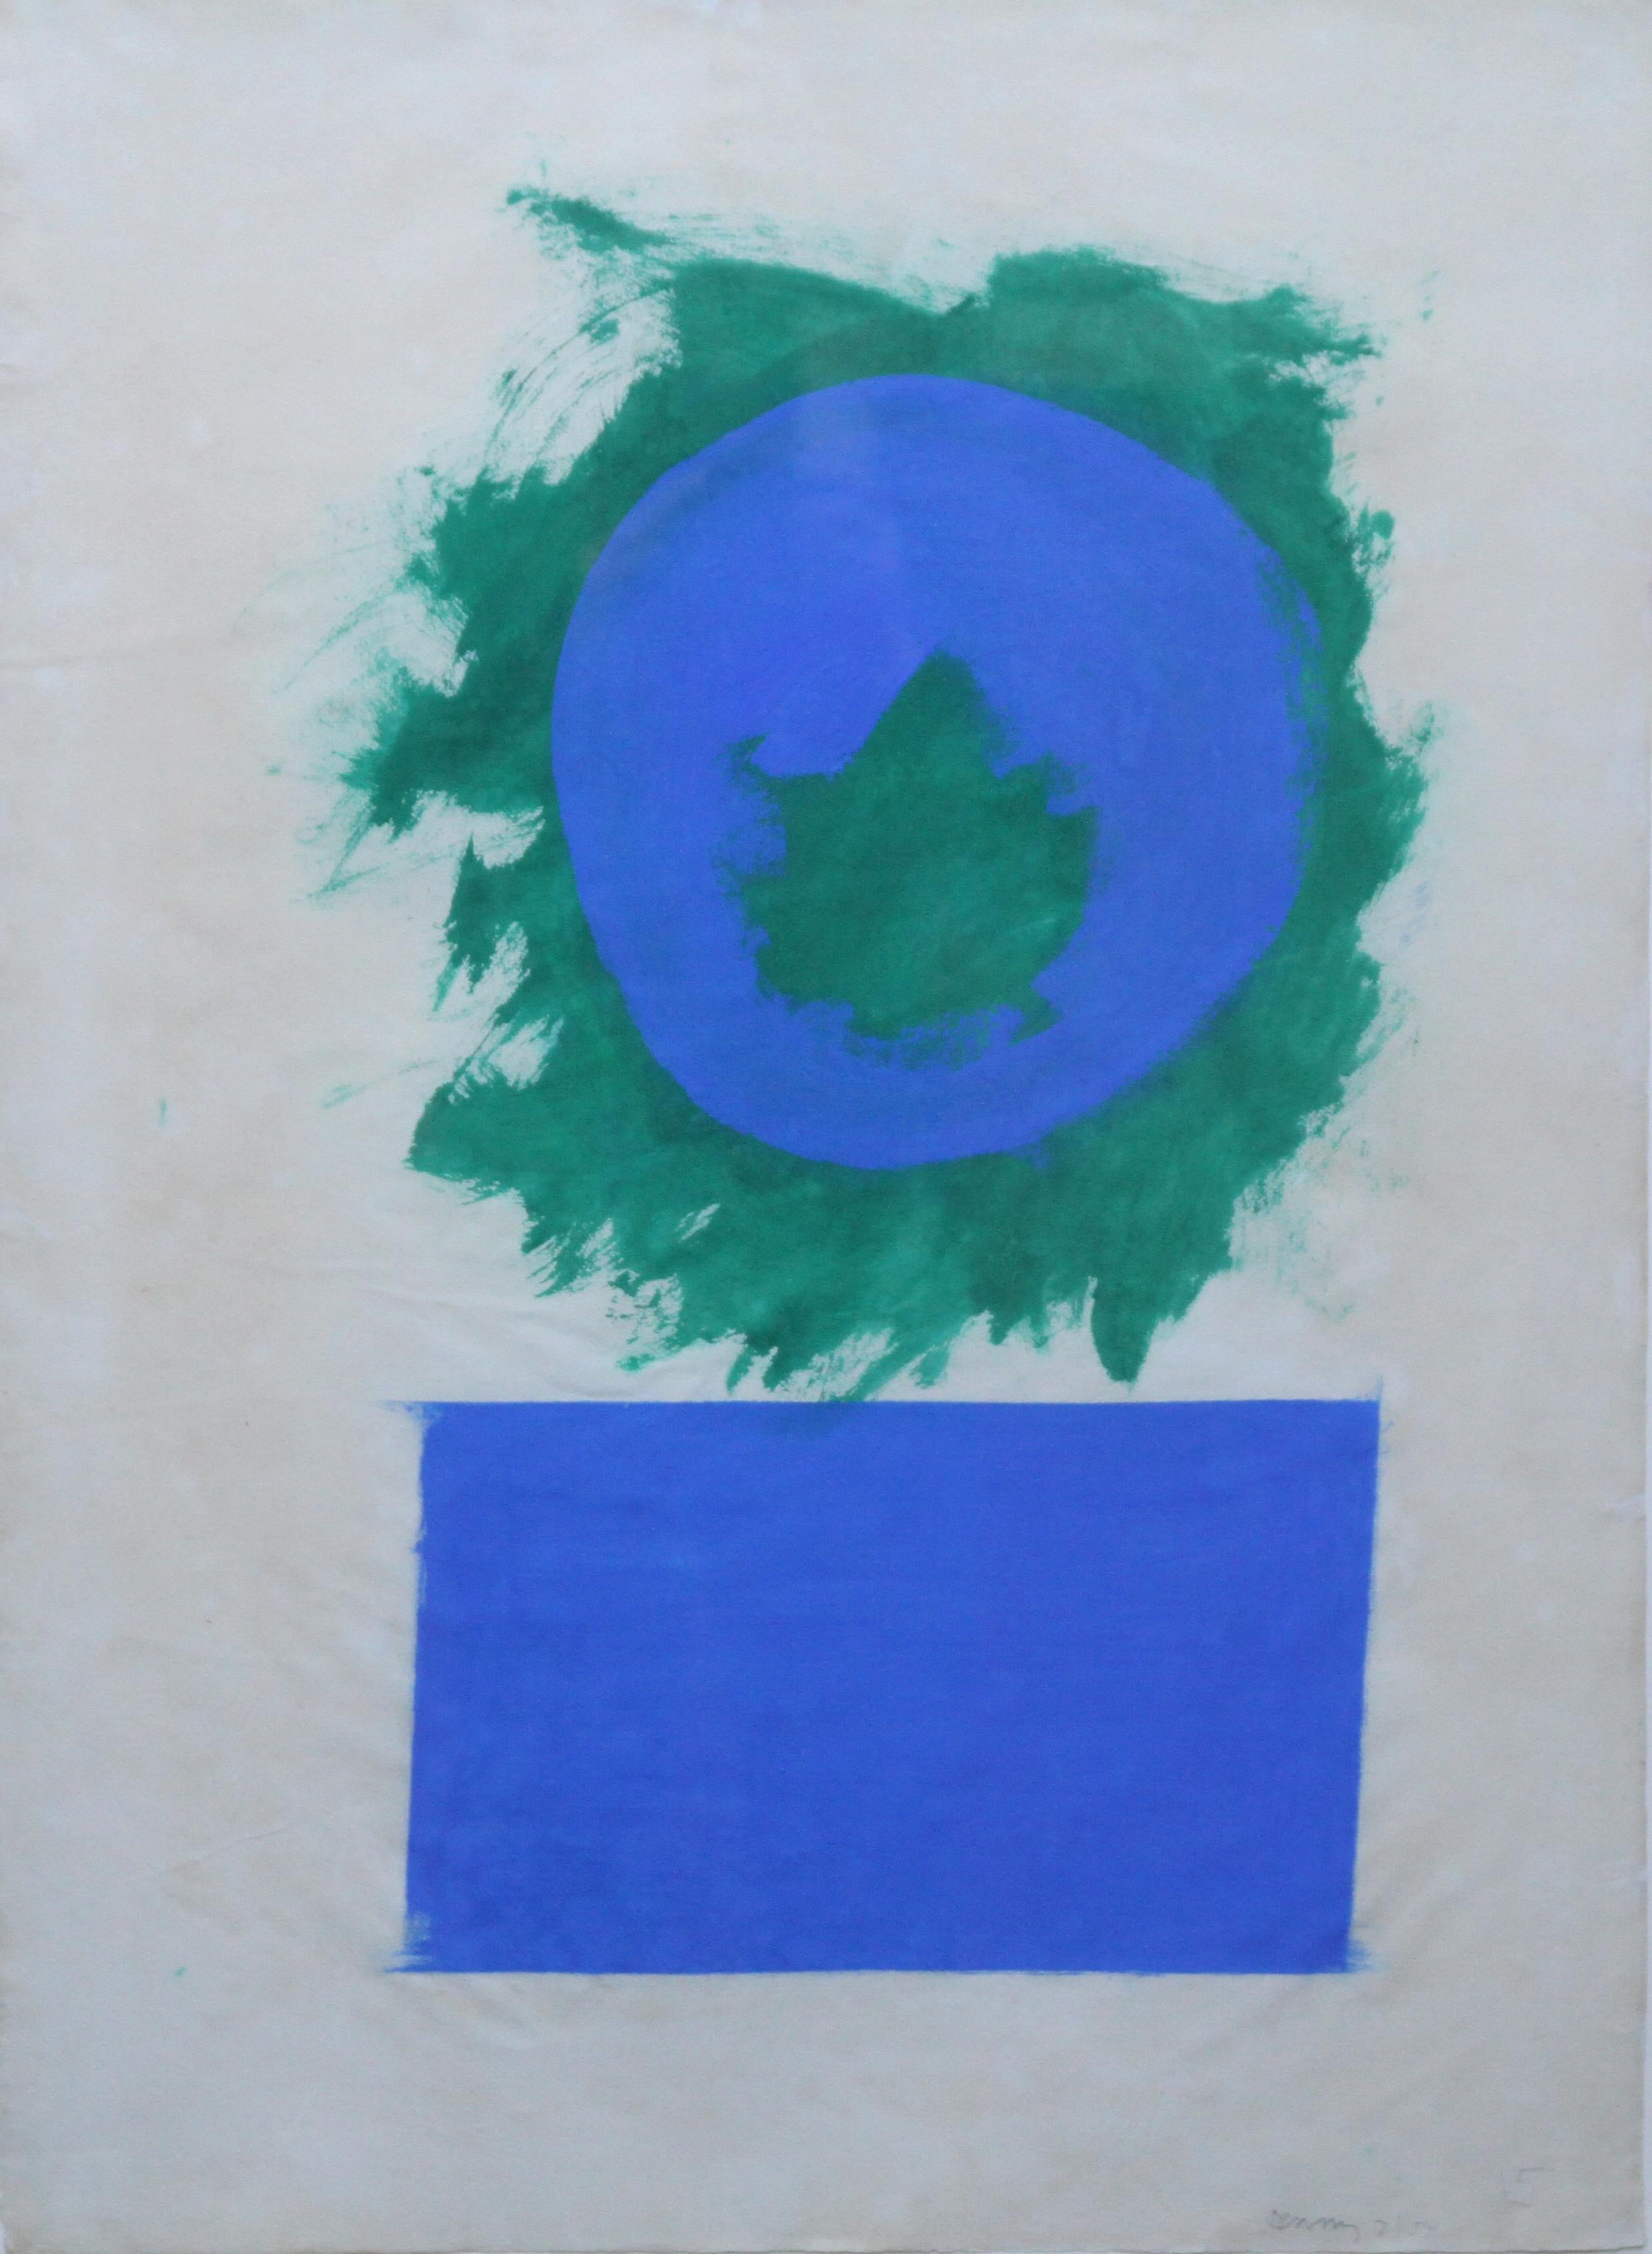 Blaue und grüne Formen – britisches abstraktes Ölgemälde in Papierfarbe aus den 50er Jahren – Painting von Robyn Denny